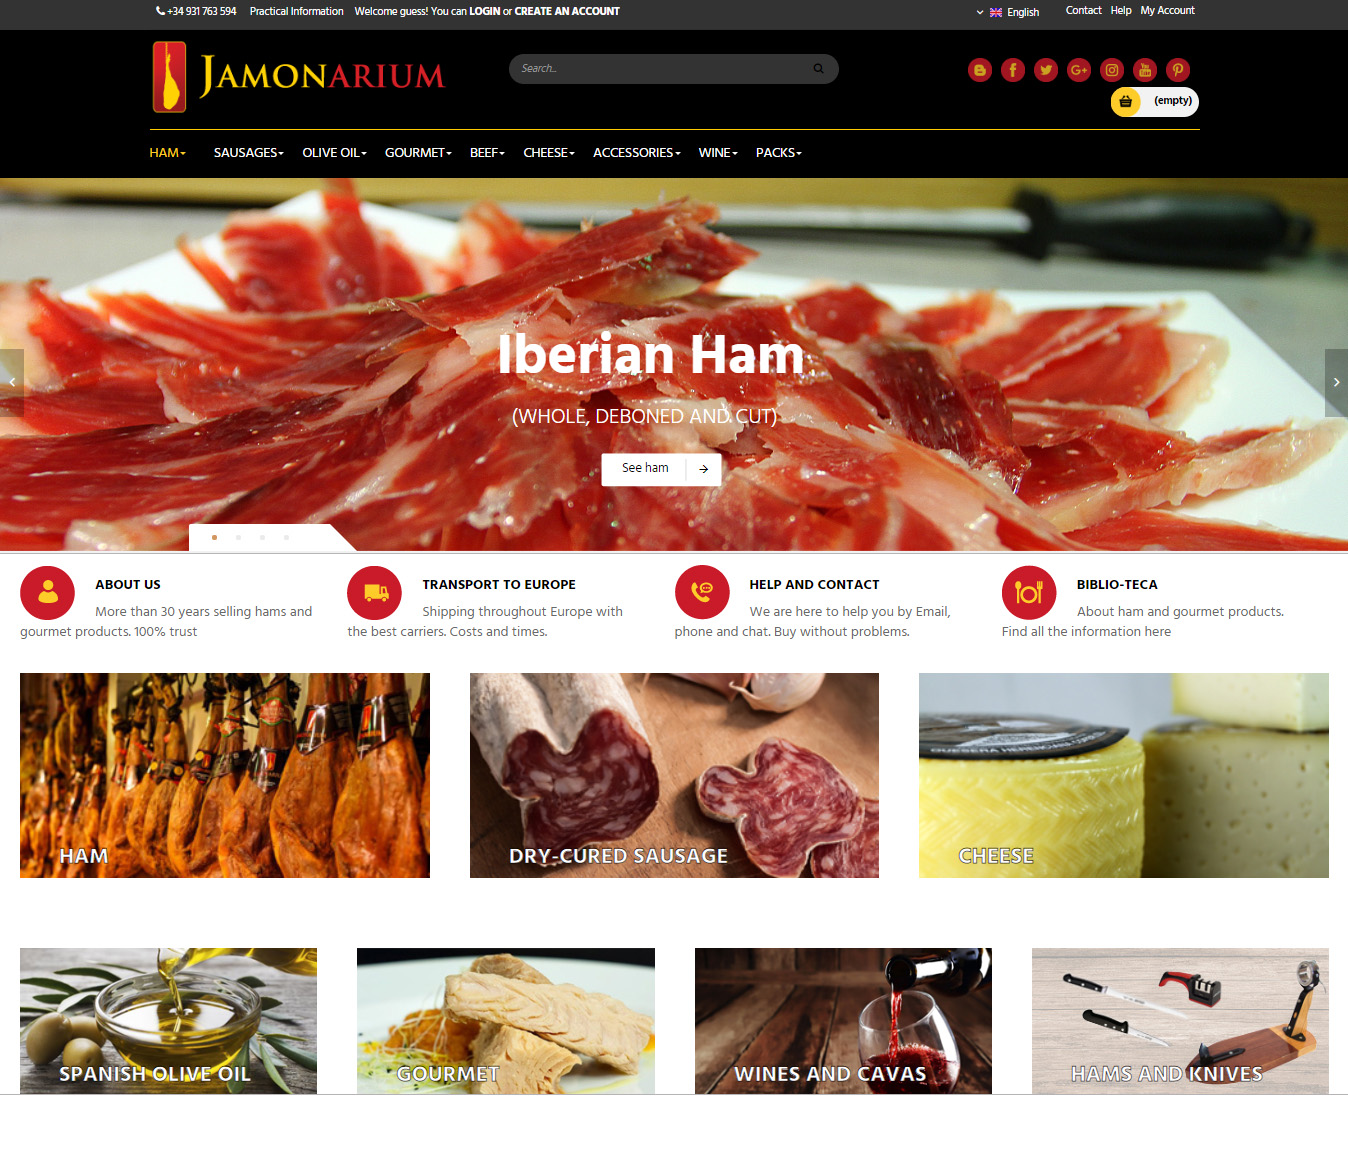 negozio online che vende prosciutti e salsicce iberiche